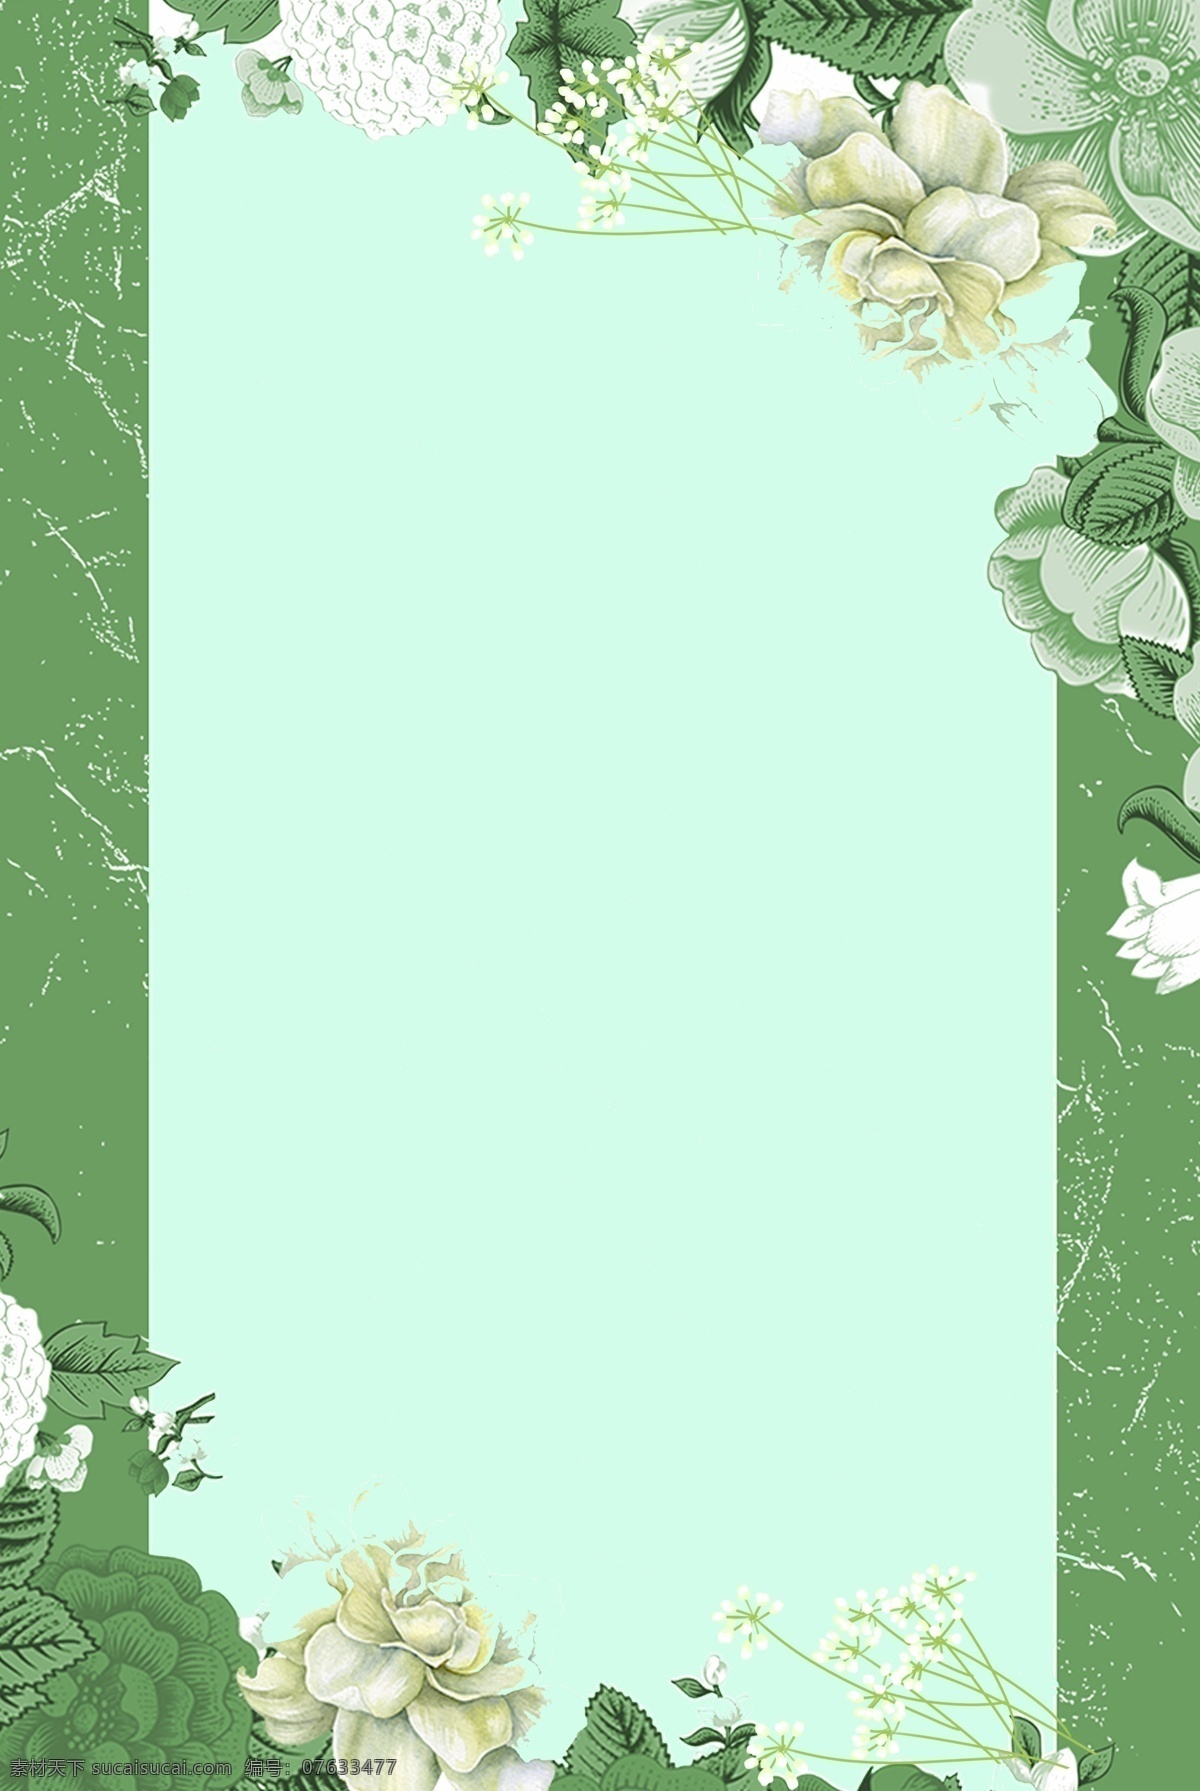 小 清新 绿色 花朵 背景 小清新 文艺 简约 唯美 白色 绣球花